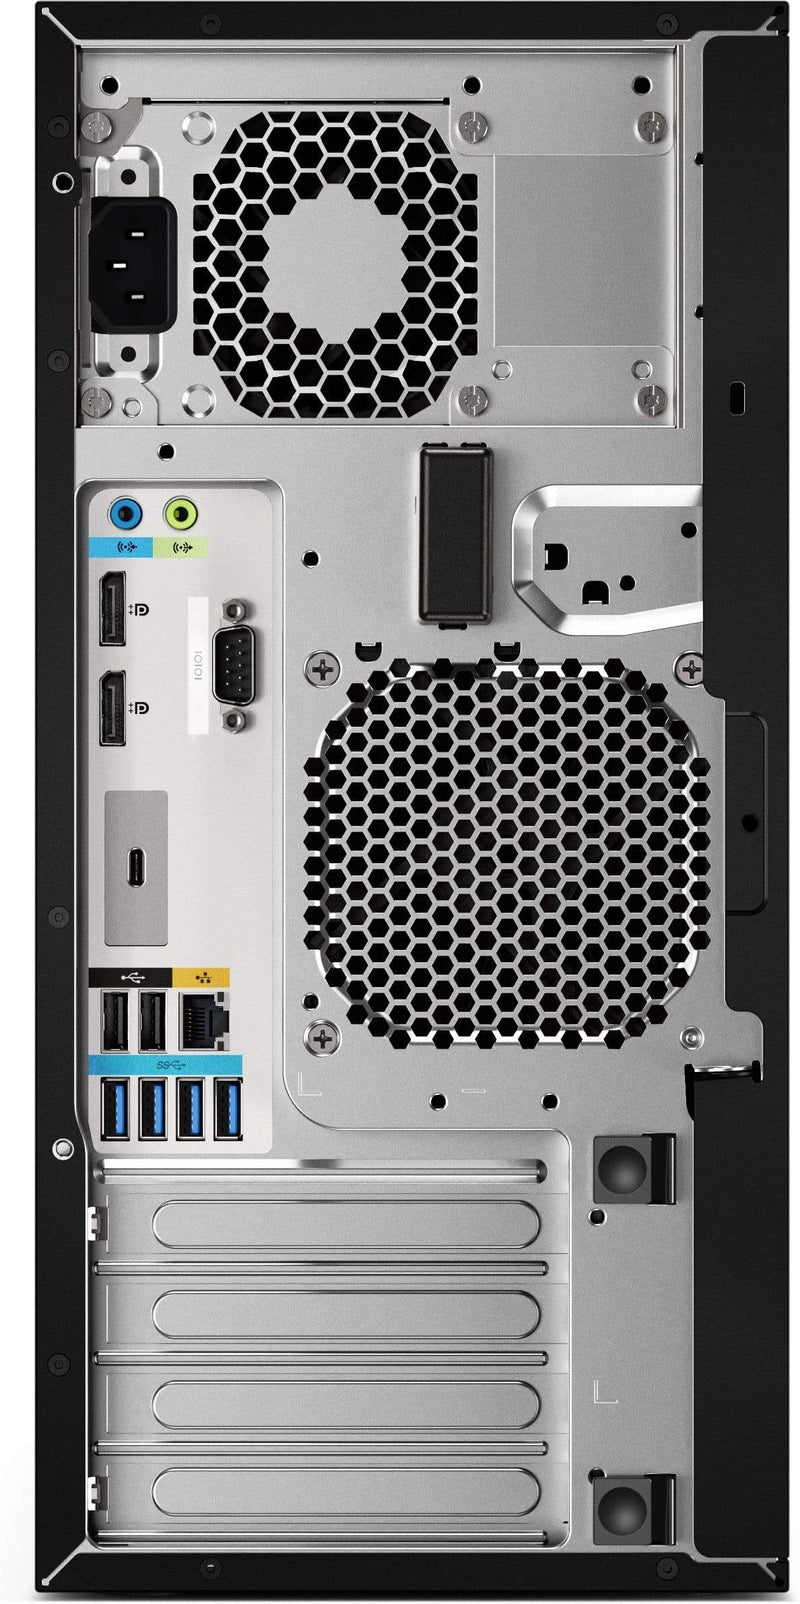 HP Z2 G4 Intel Core i7-8700K 16GB RAM 256GB SSD Mini Workstation PC Black Windows 10 Pro 4RW83EA